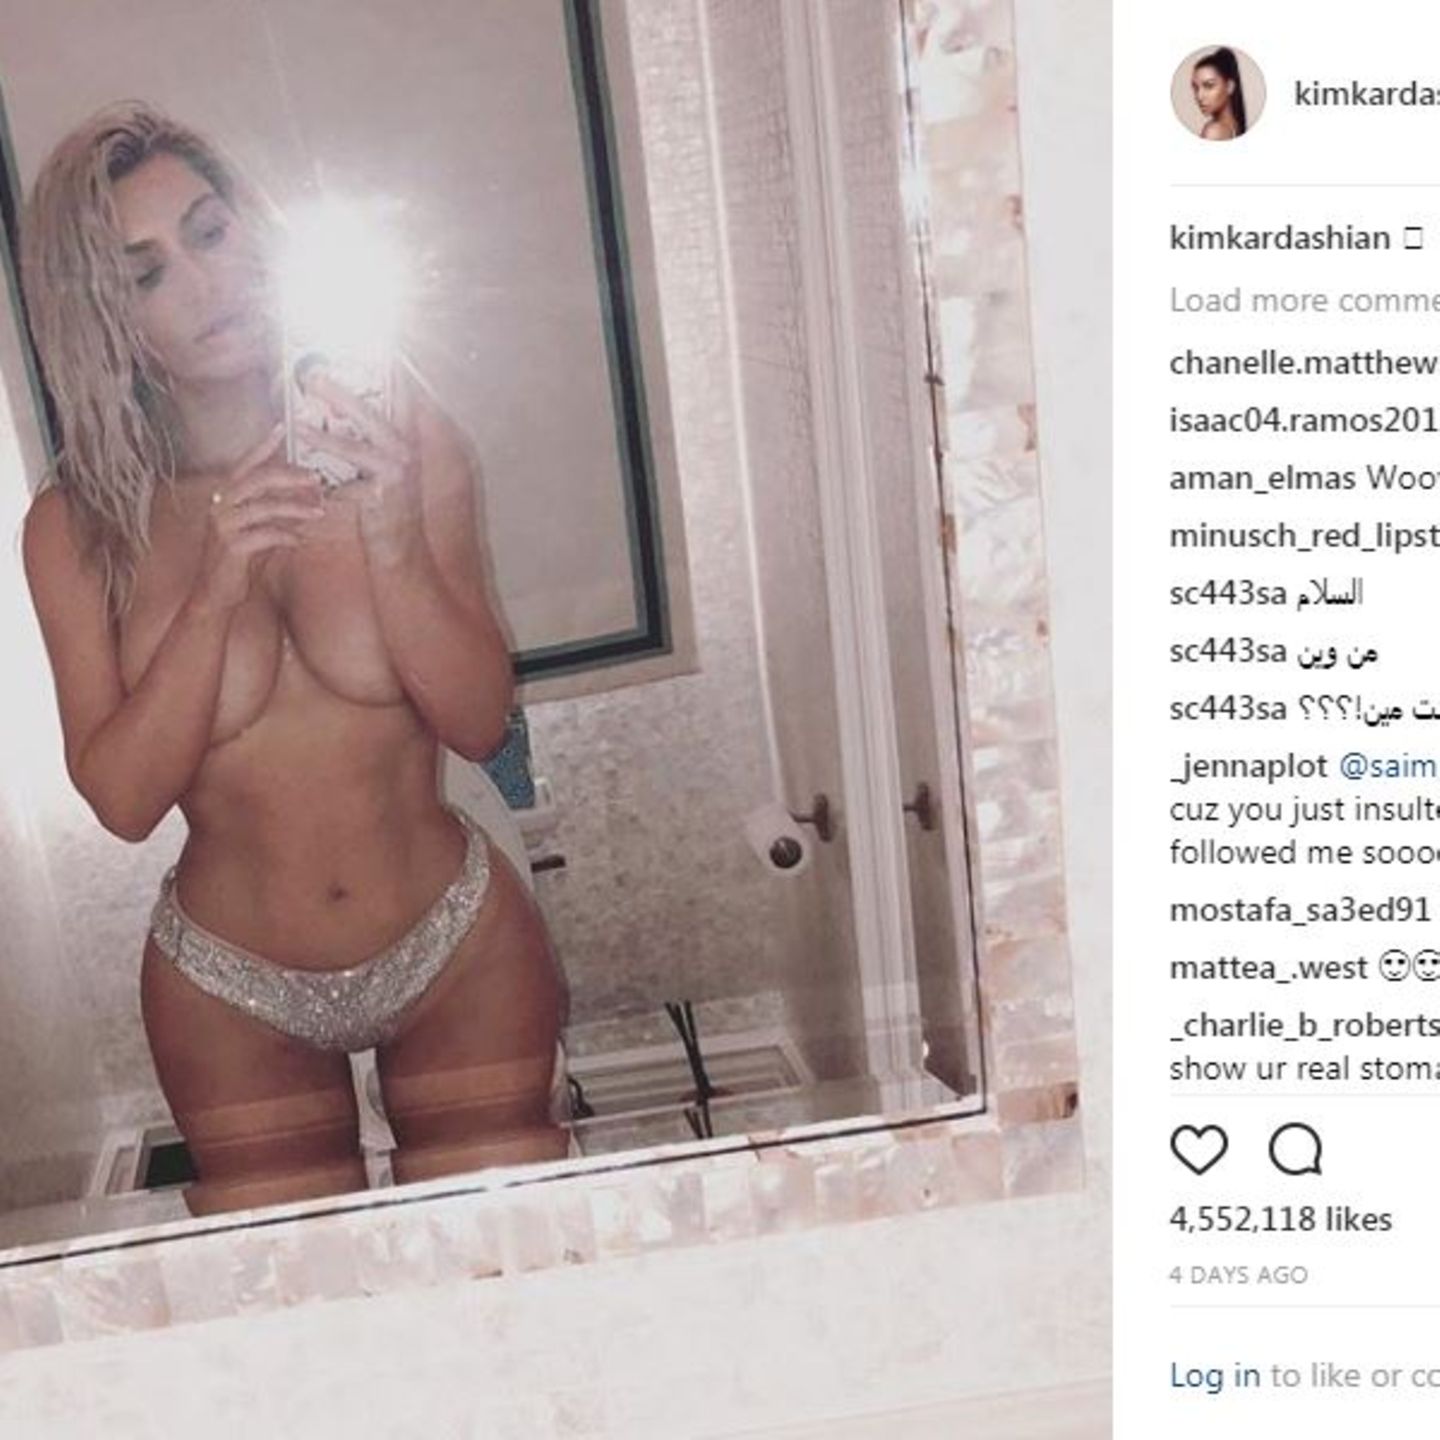 Kim Kardashian: Ihre bizarren Nacktfotos erregen die Gemüter | STERN.de